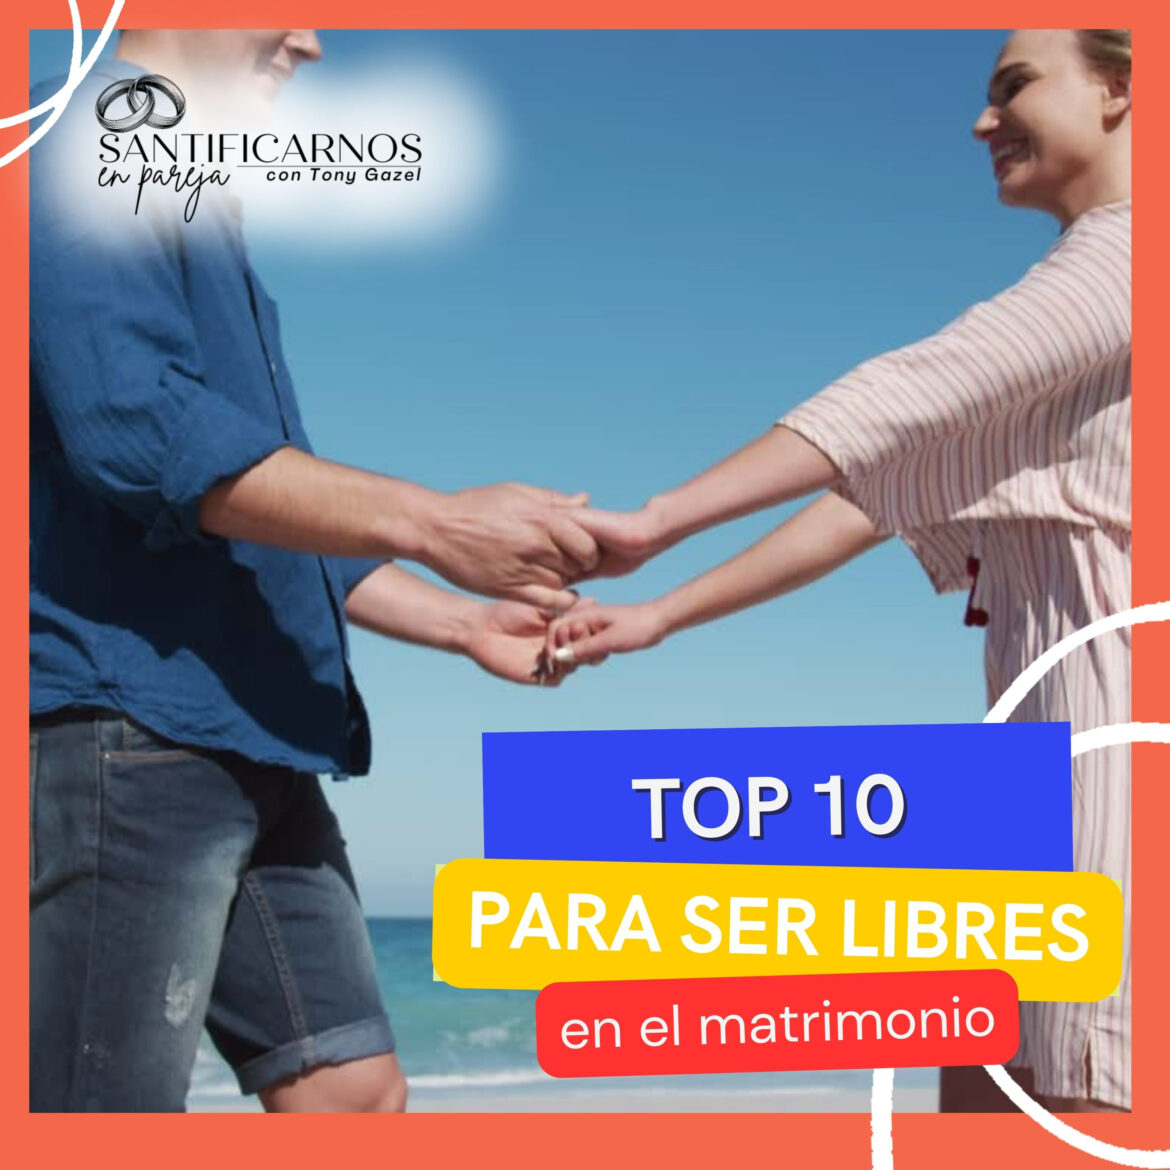 TOP 10 PARA SER LIBRES EN NUESTRO MATRIMONIO.